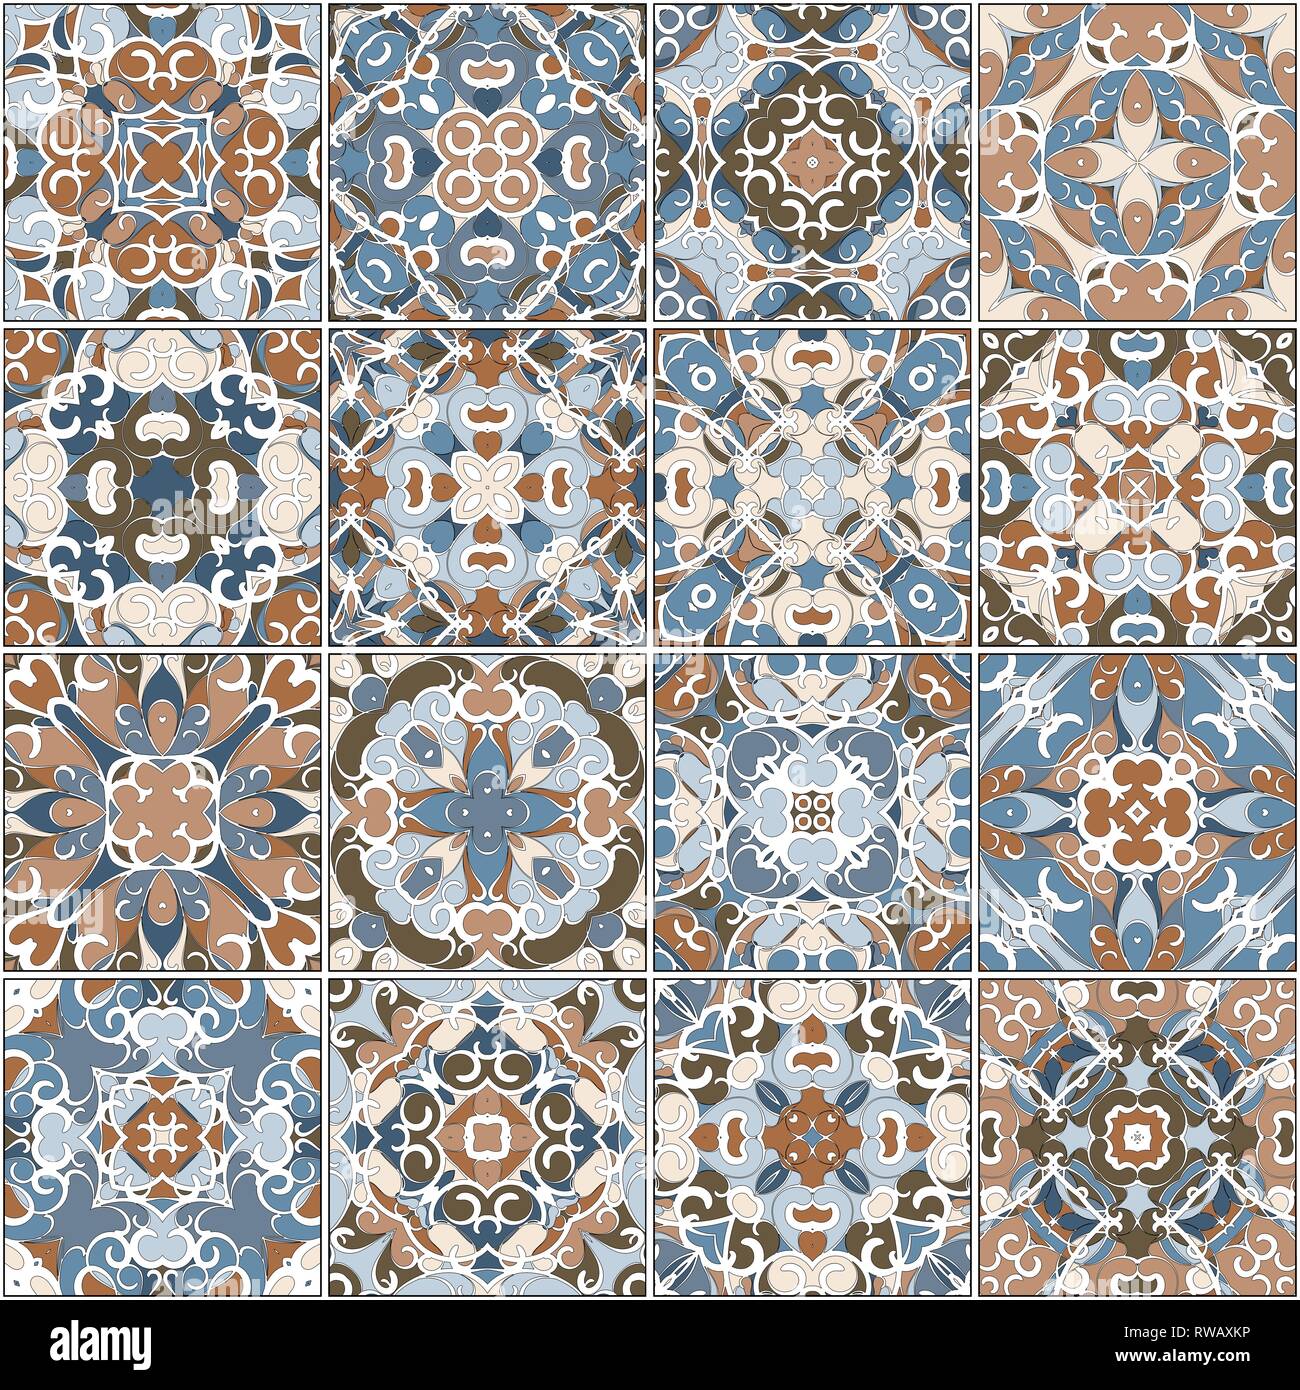 Eine Sammlung von Keramikfliesen in Blau und Braun retro Farben. Eine Reihe von quadratischen Muster im ethnischen Stil. Vector Illustration. Stock Vektor